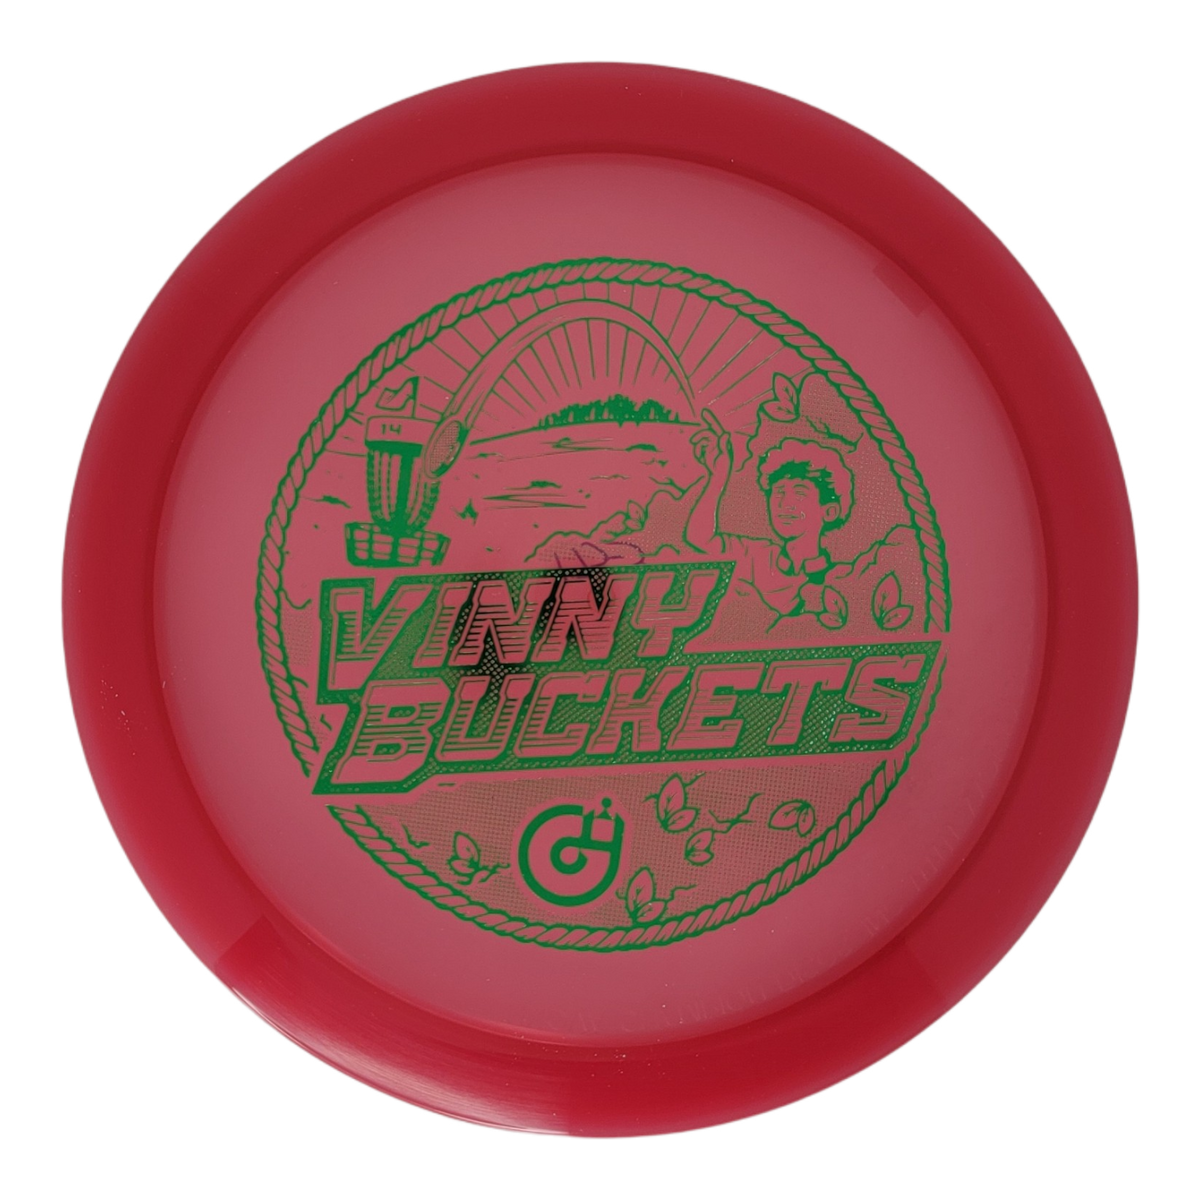 Innova Champion Firebird - Vinny Buckets